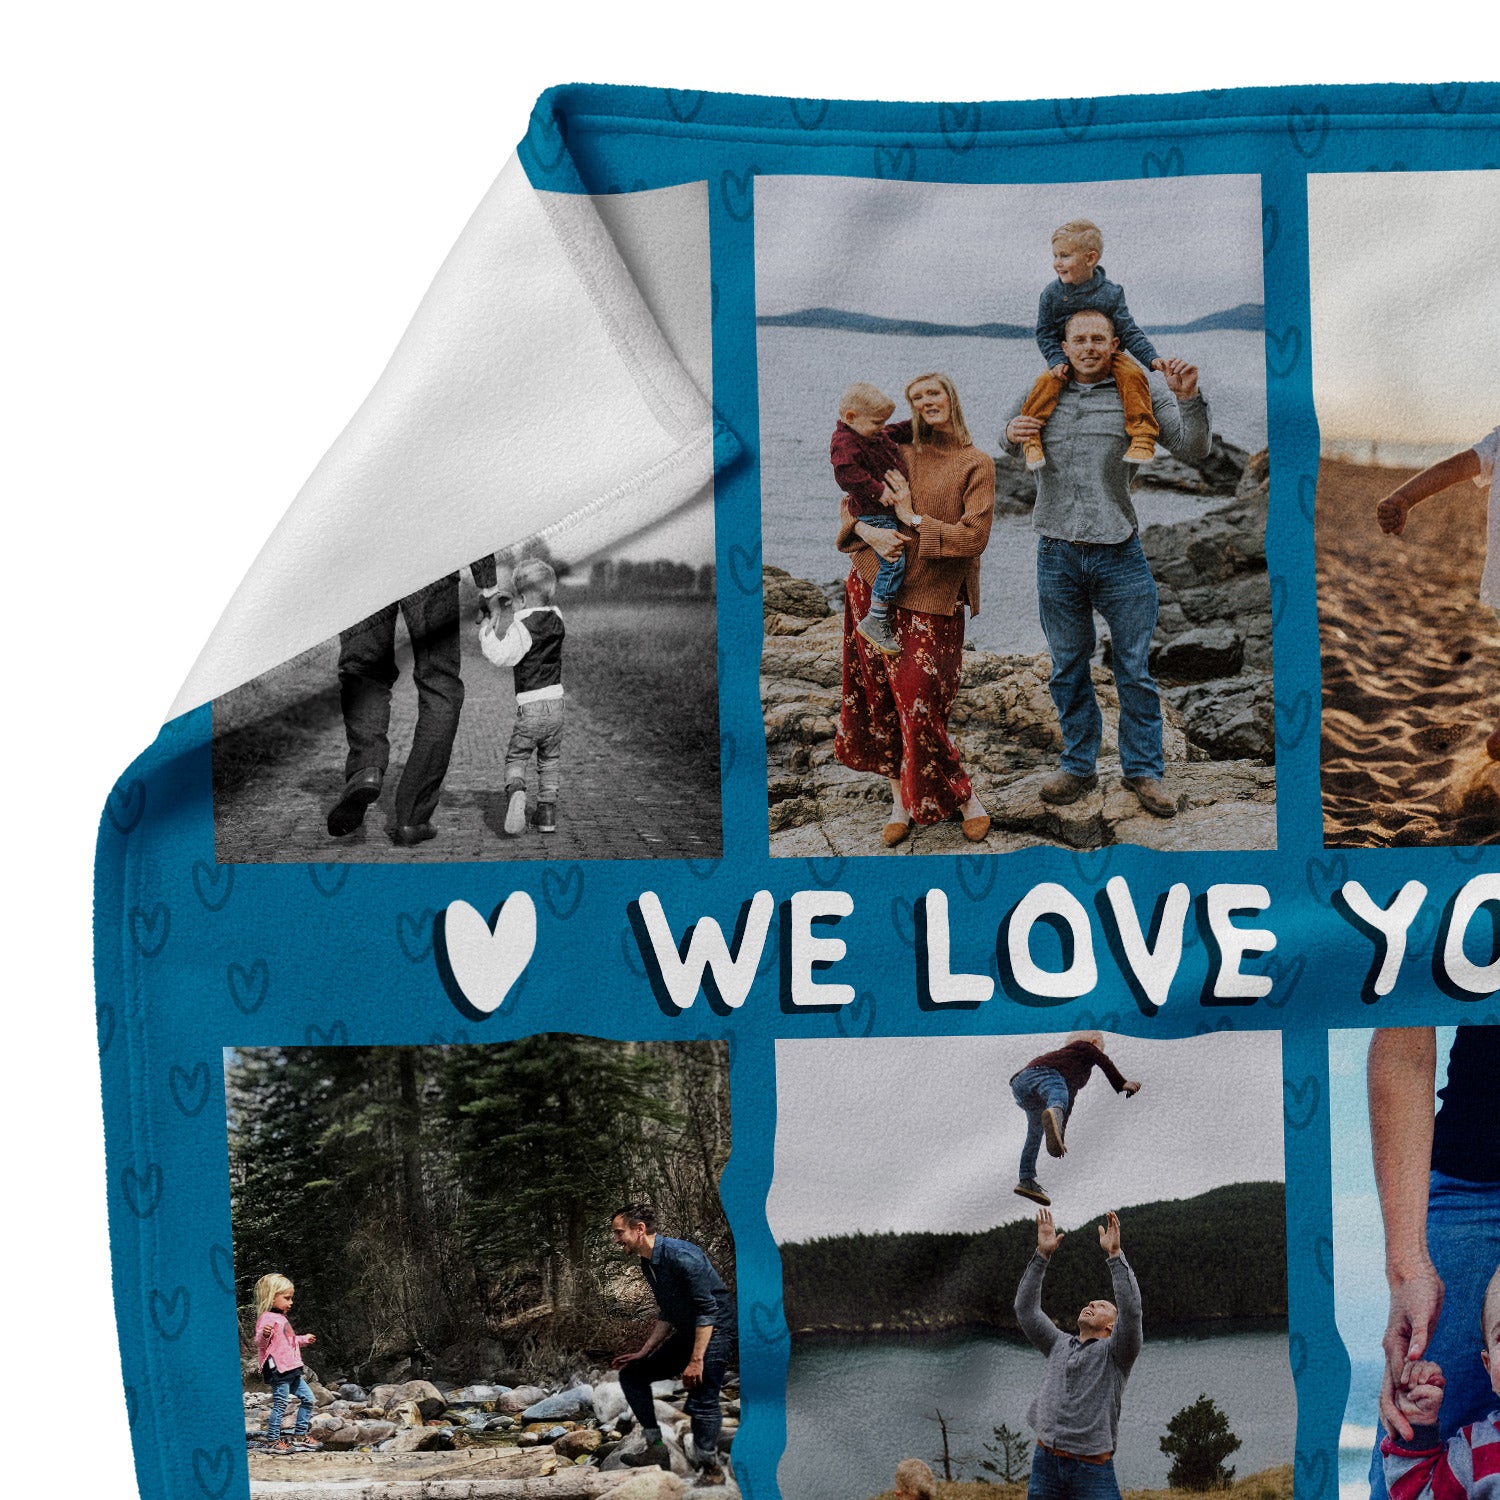 We Love You Dad Personalised Blanket